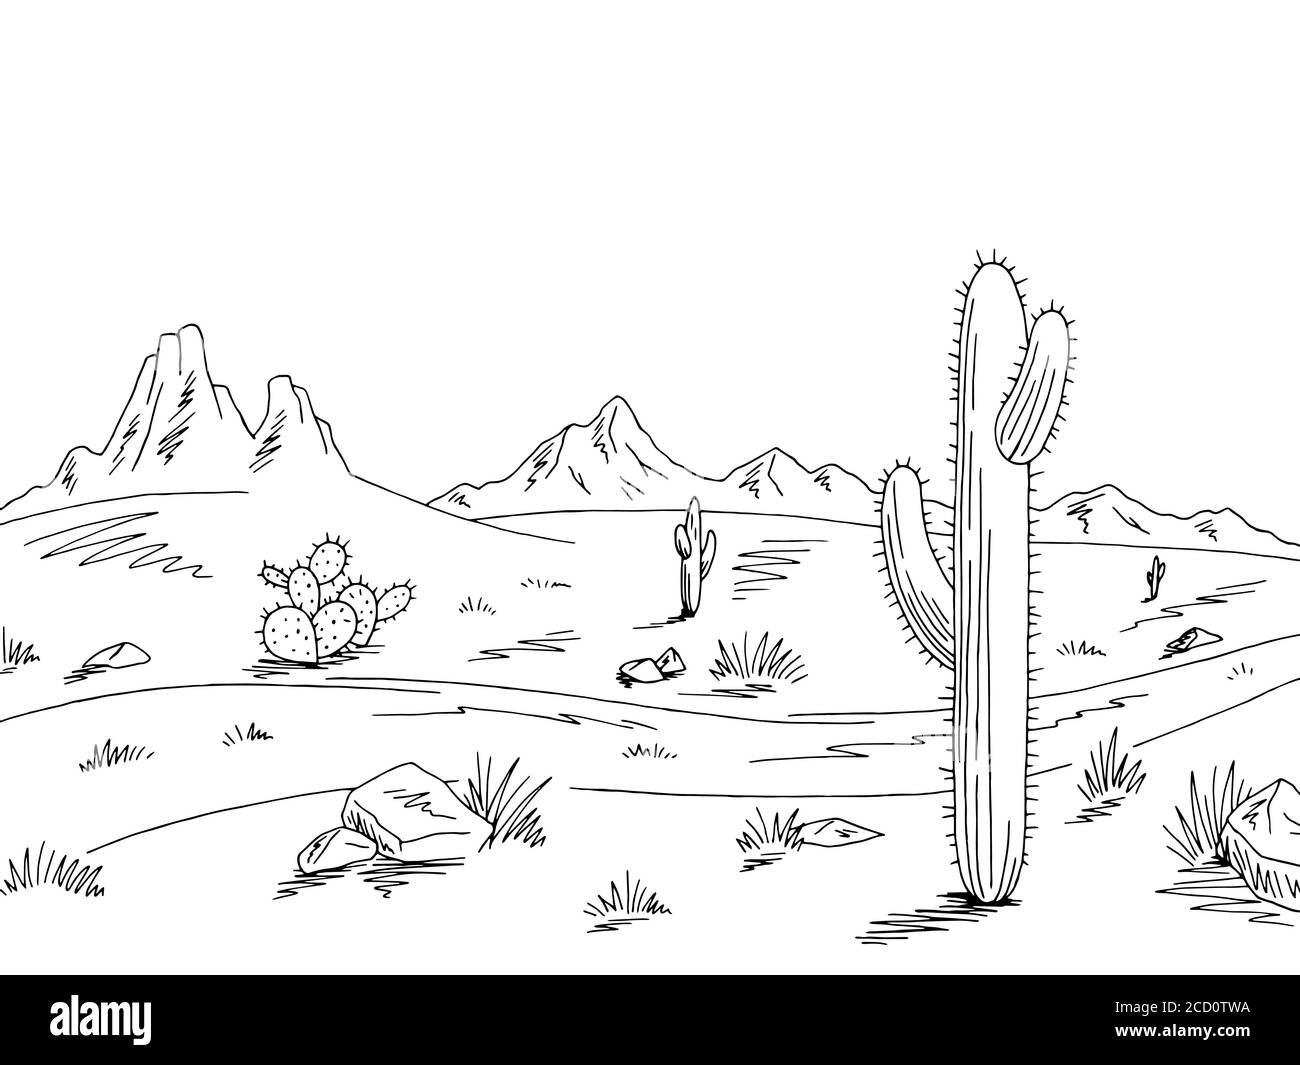 Prairie road graphic black white desert landscape sketch illustration vector Stock Vector